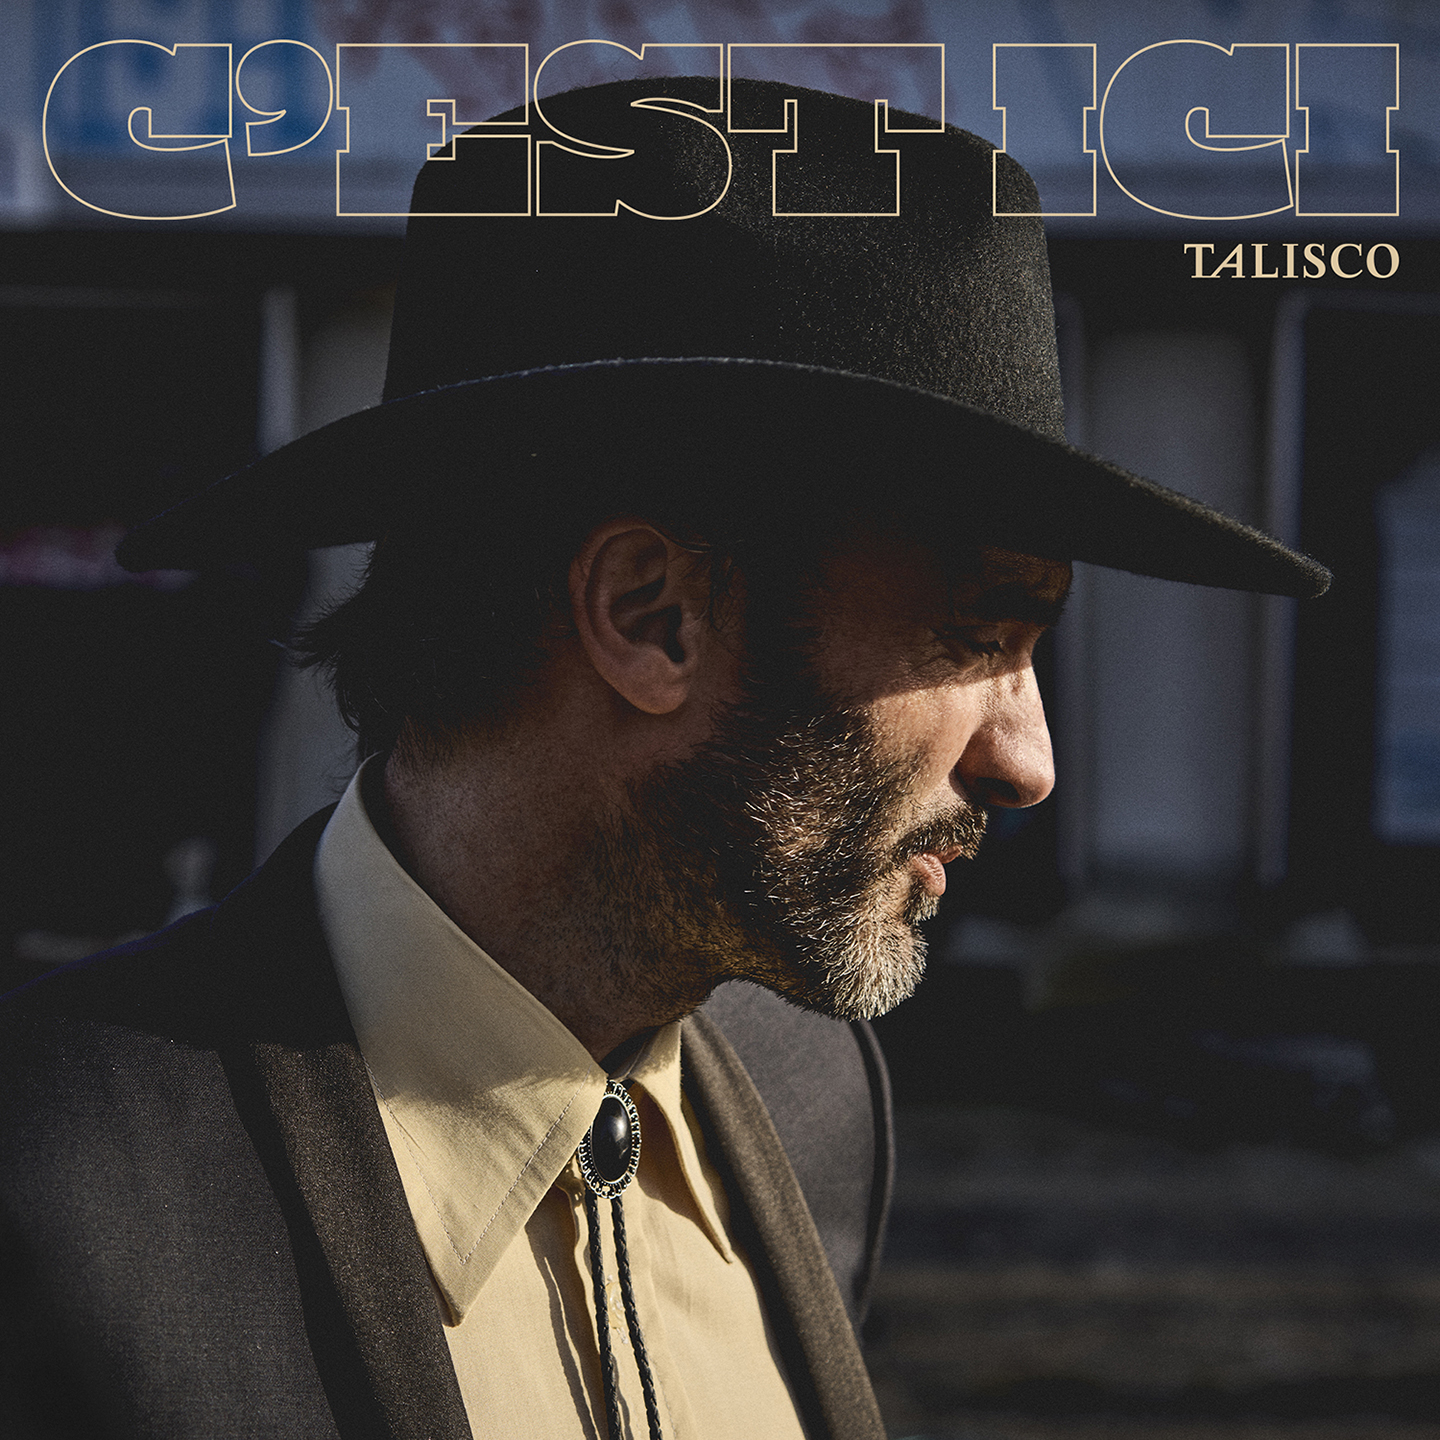 Talisco - Nouveau single (C'est ici)